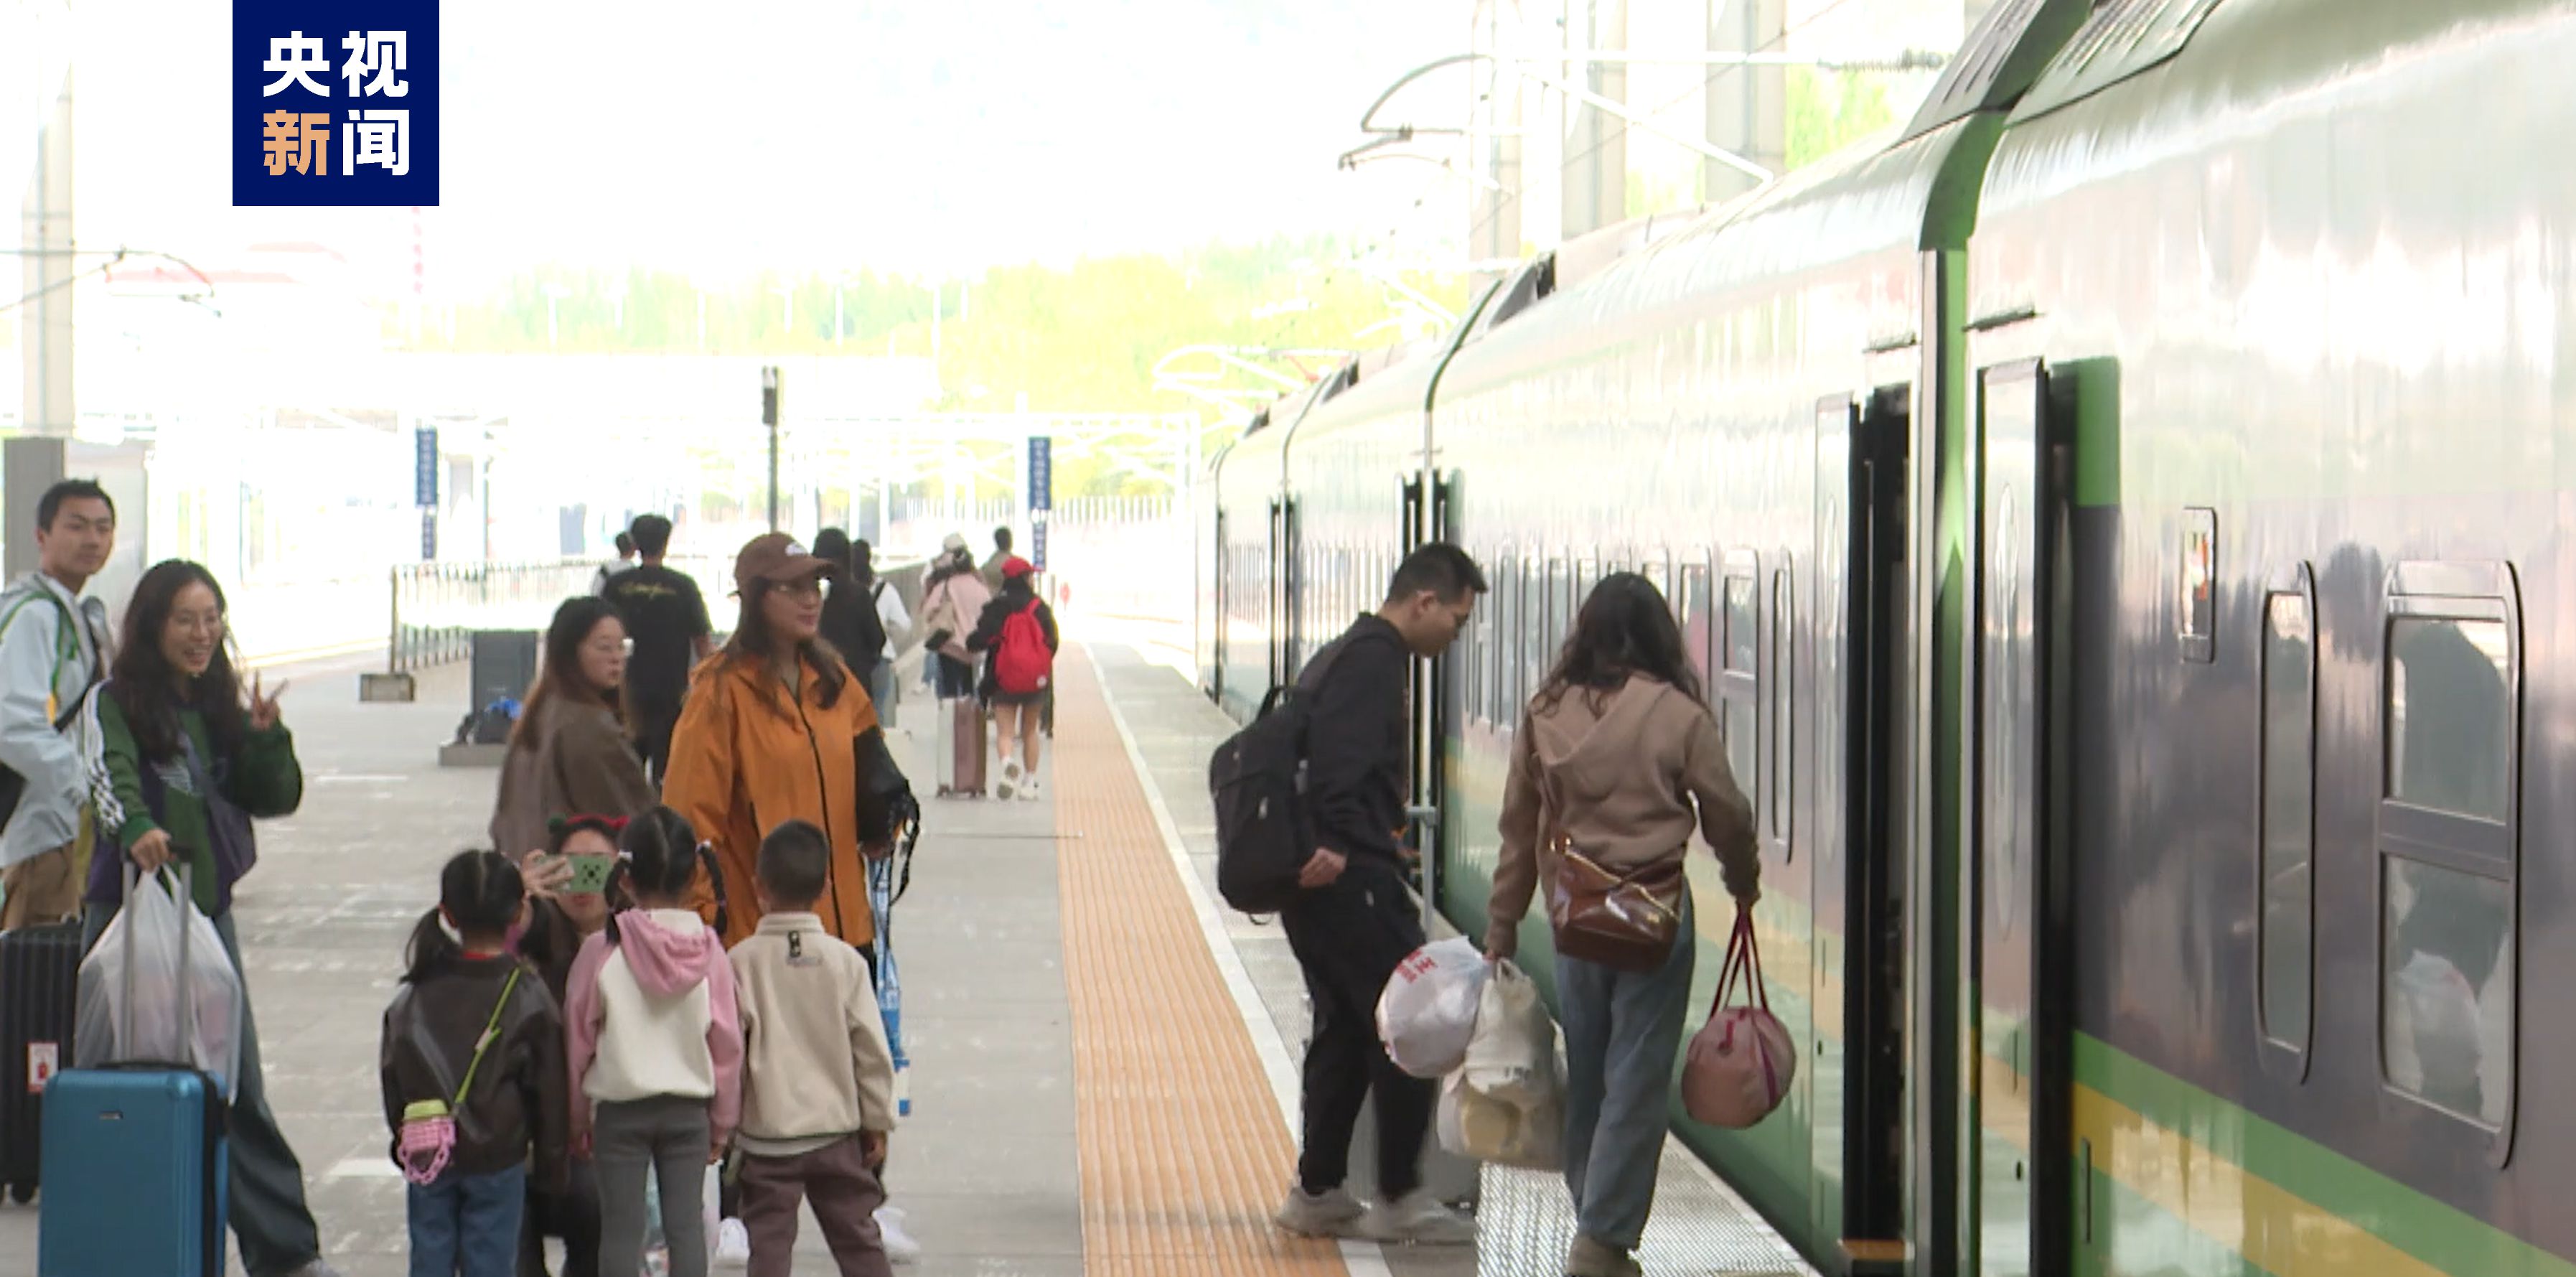 青藏鐵路西格段通車40週年 累計發送旅客突破1.1億人次